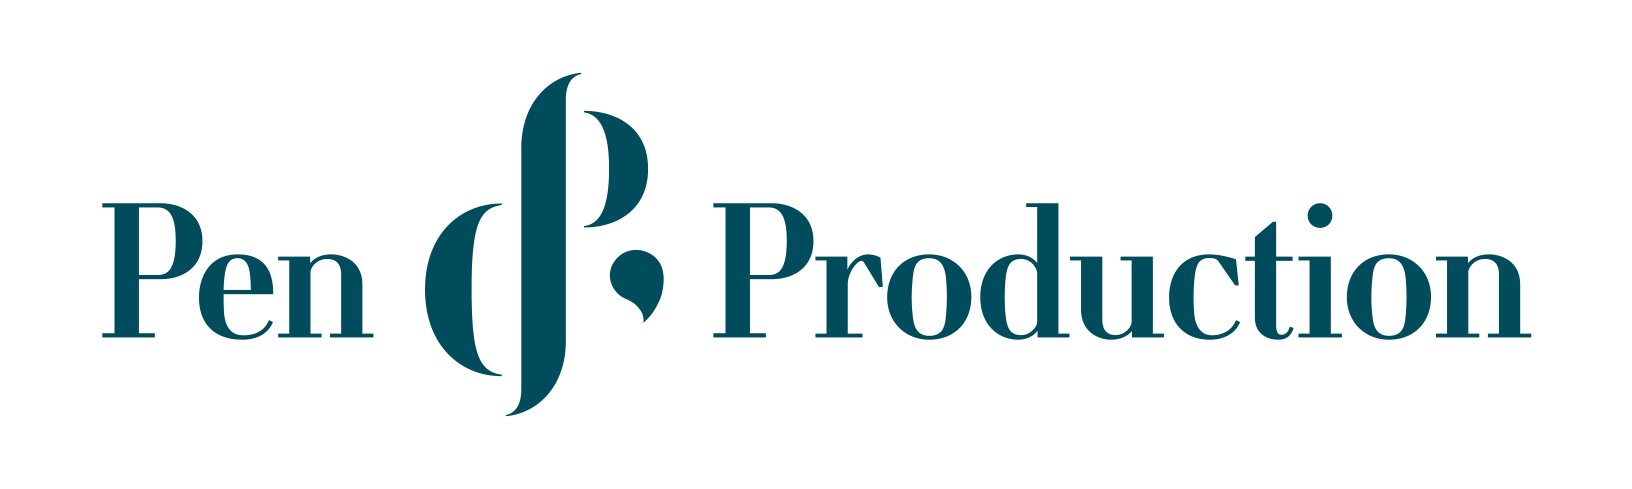 Pen&amp;Production logo